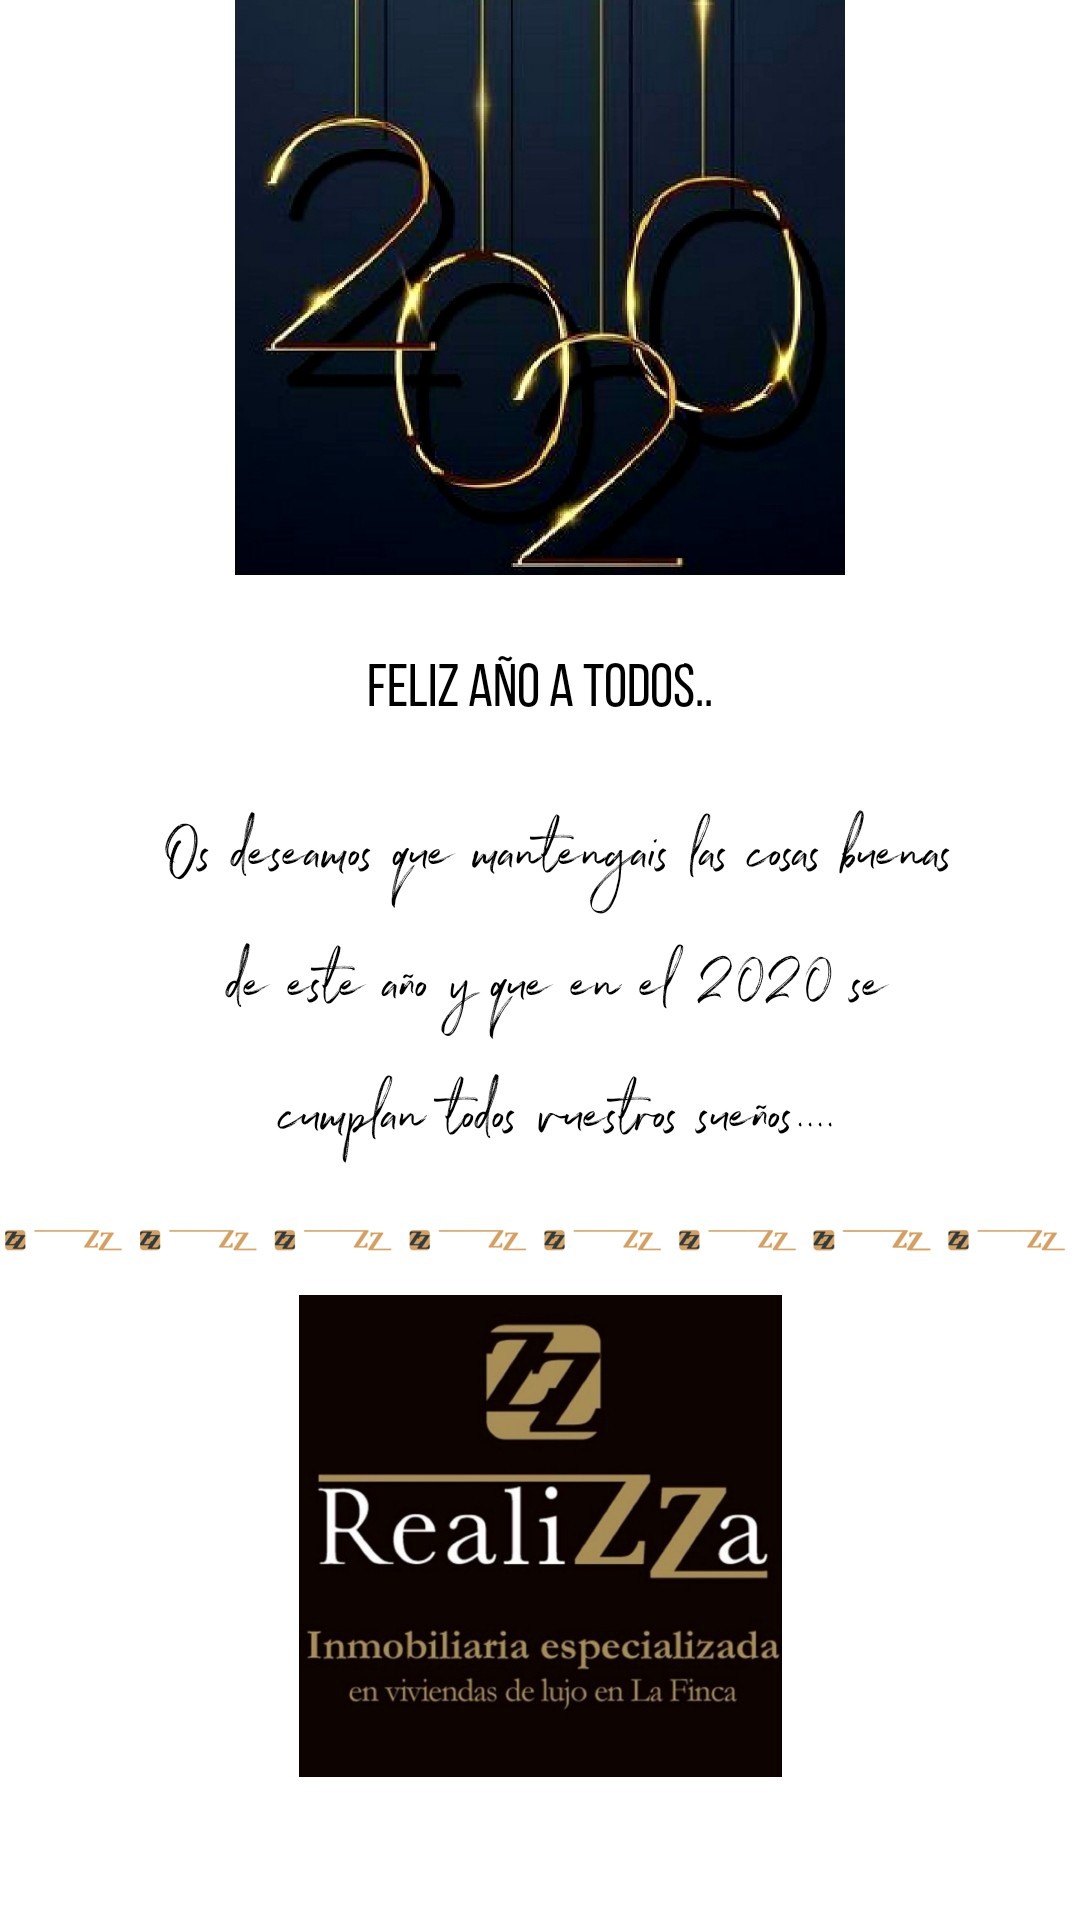 Realizza-La-Finca-feliz-año-2020